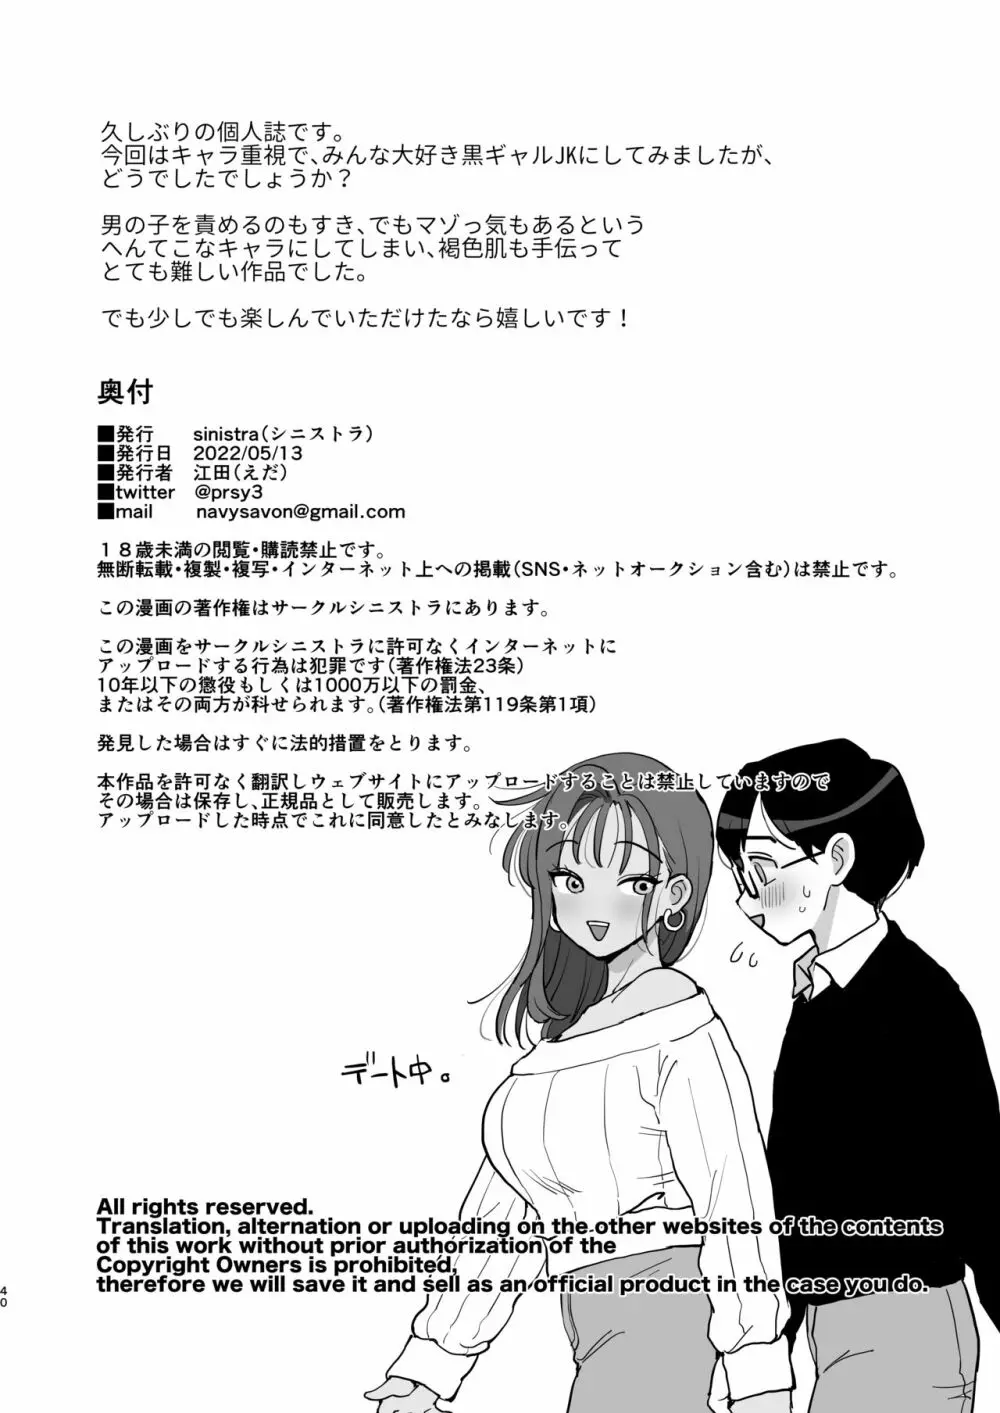 童貞ちょーだい!!〜ヤリマン幼馴染のセフレにされた話〜 39ページ